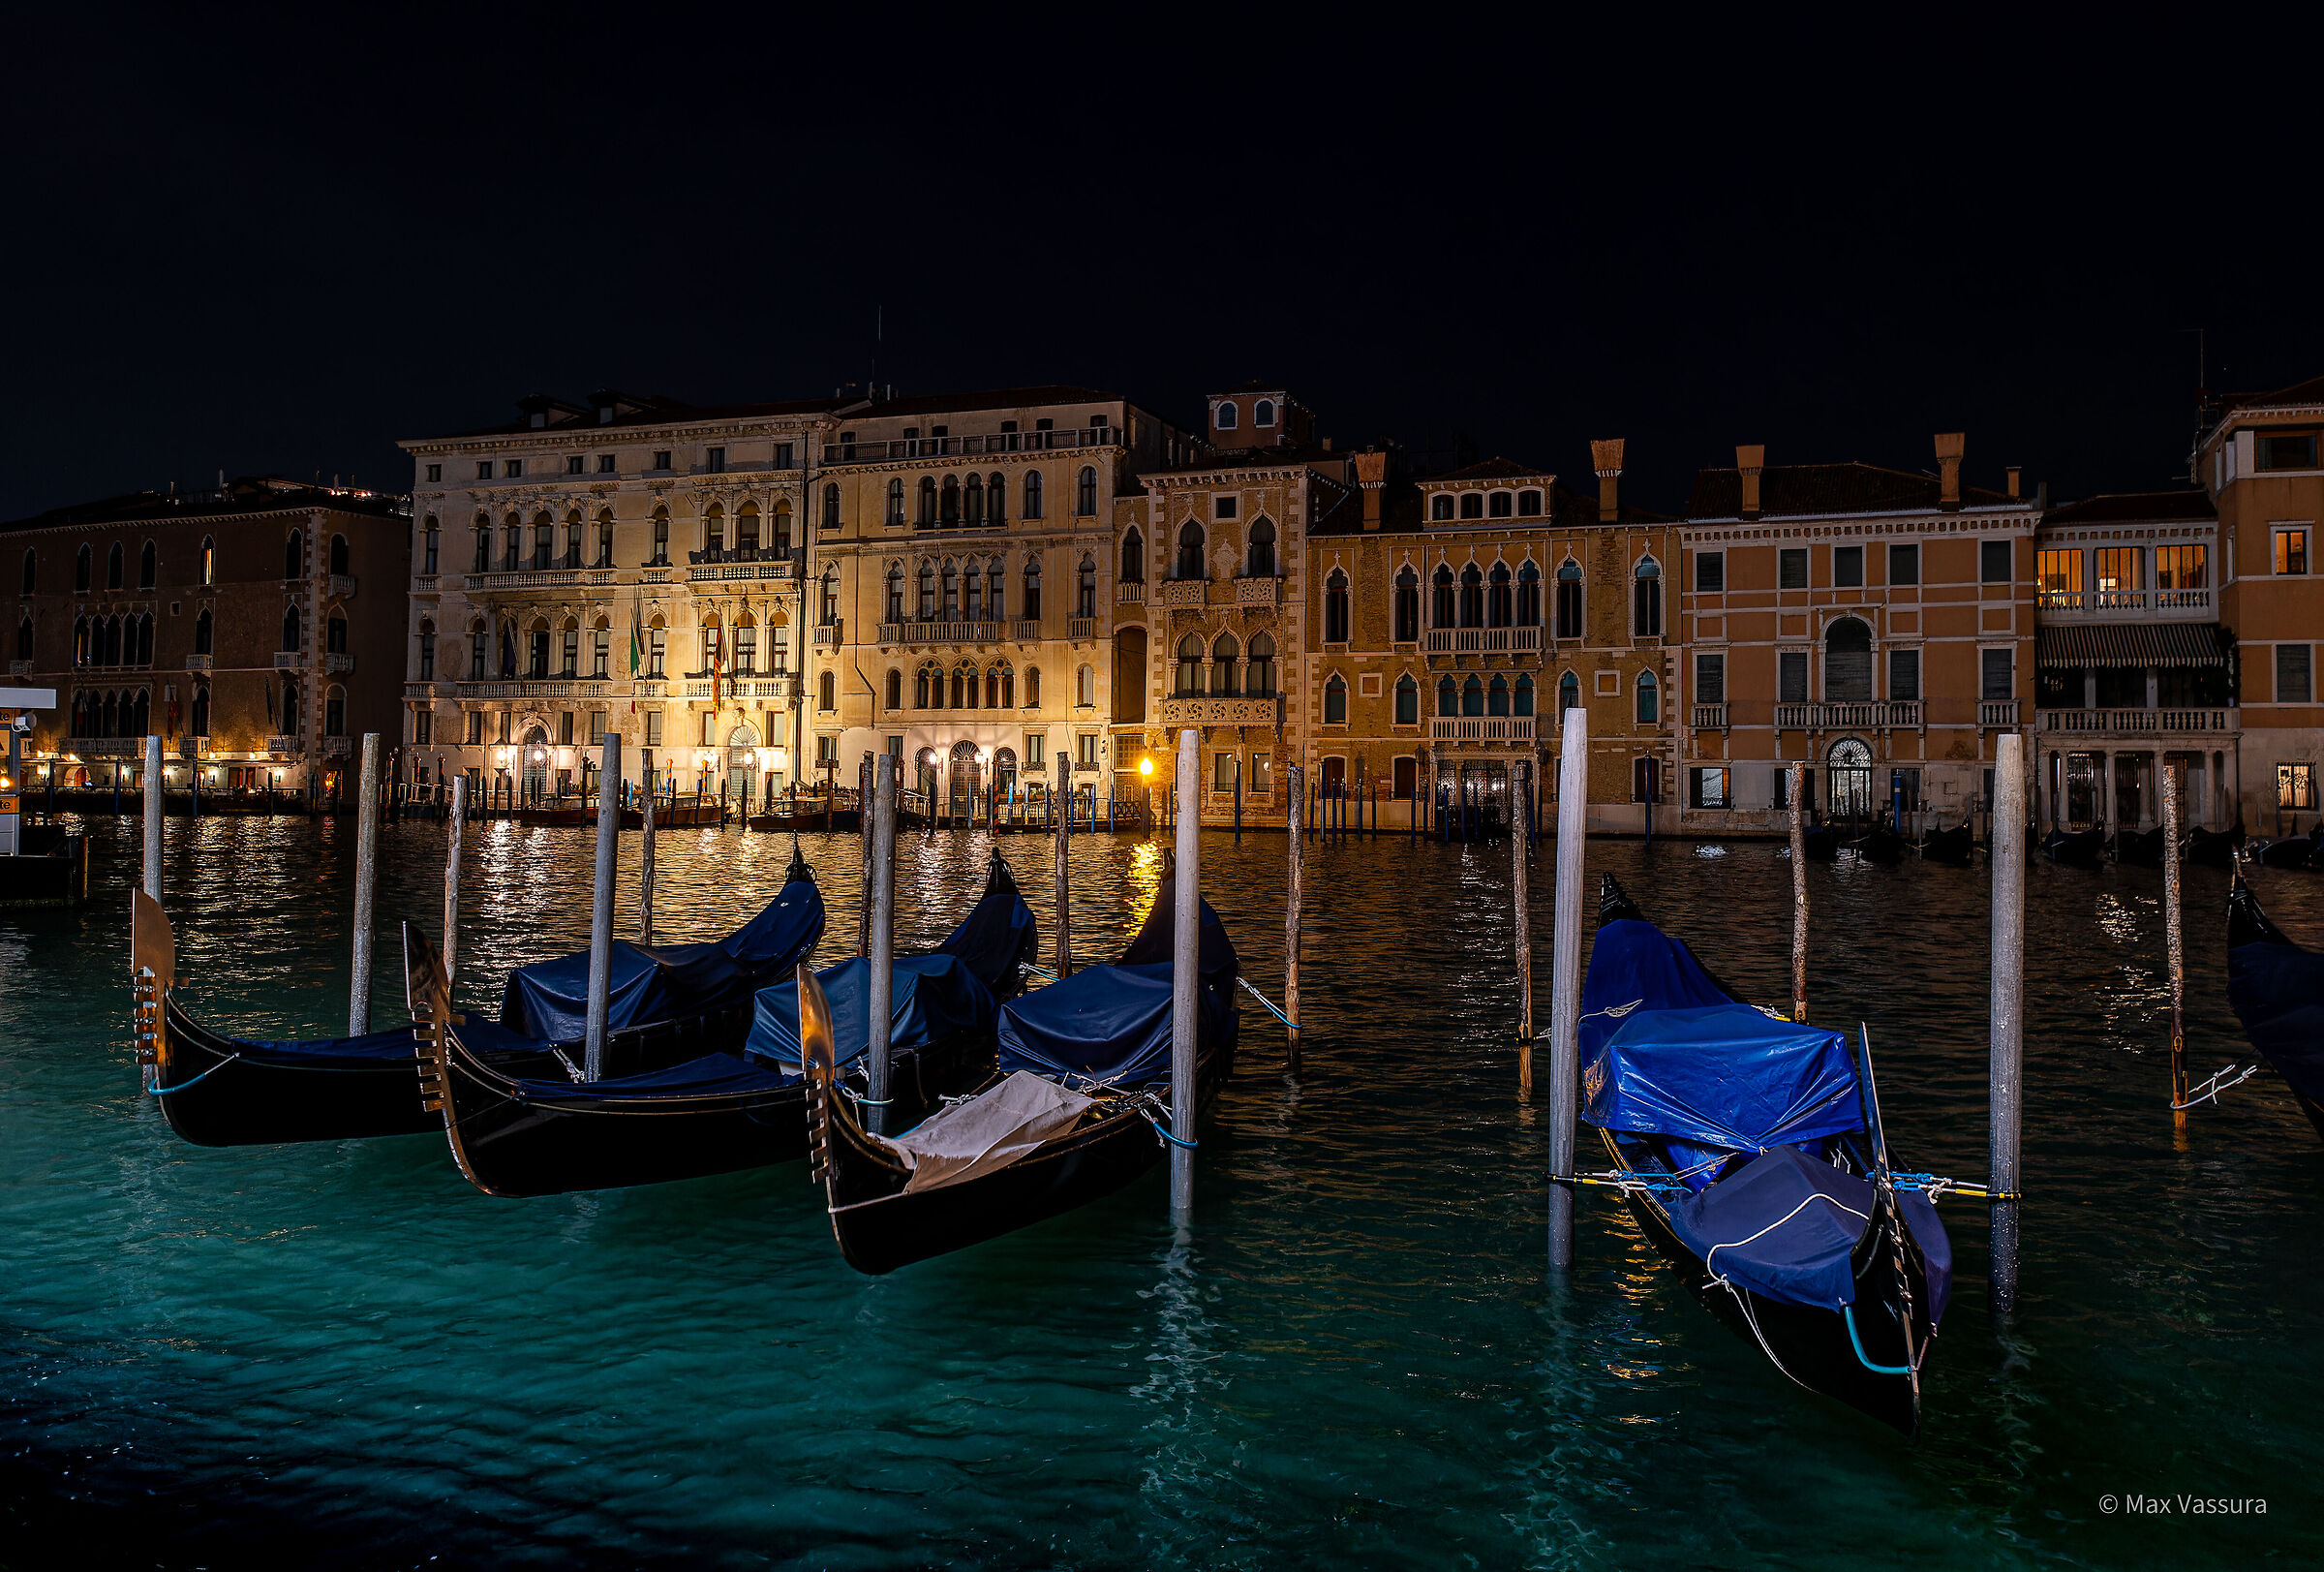 Venice and the gondolas...